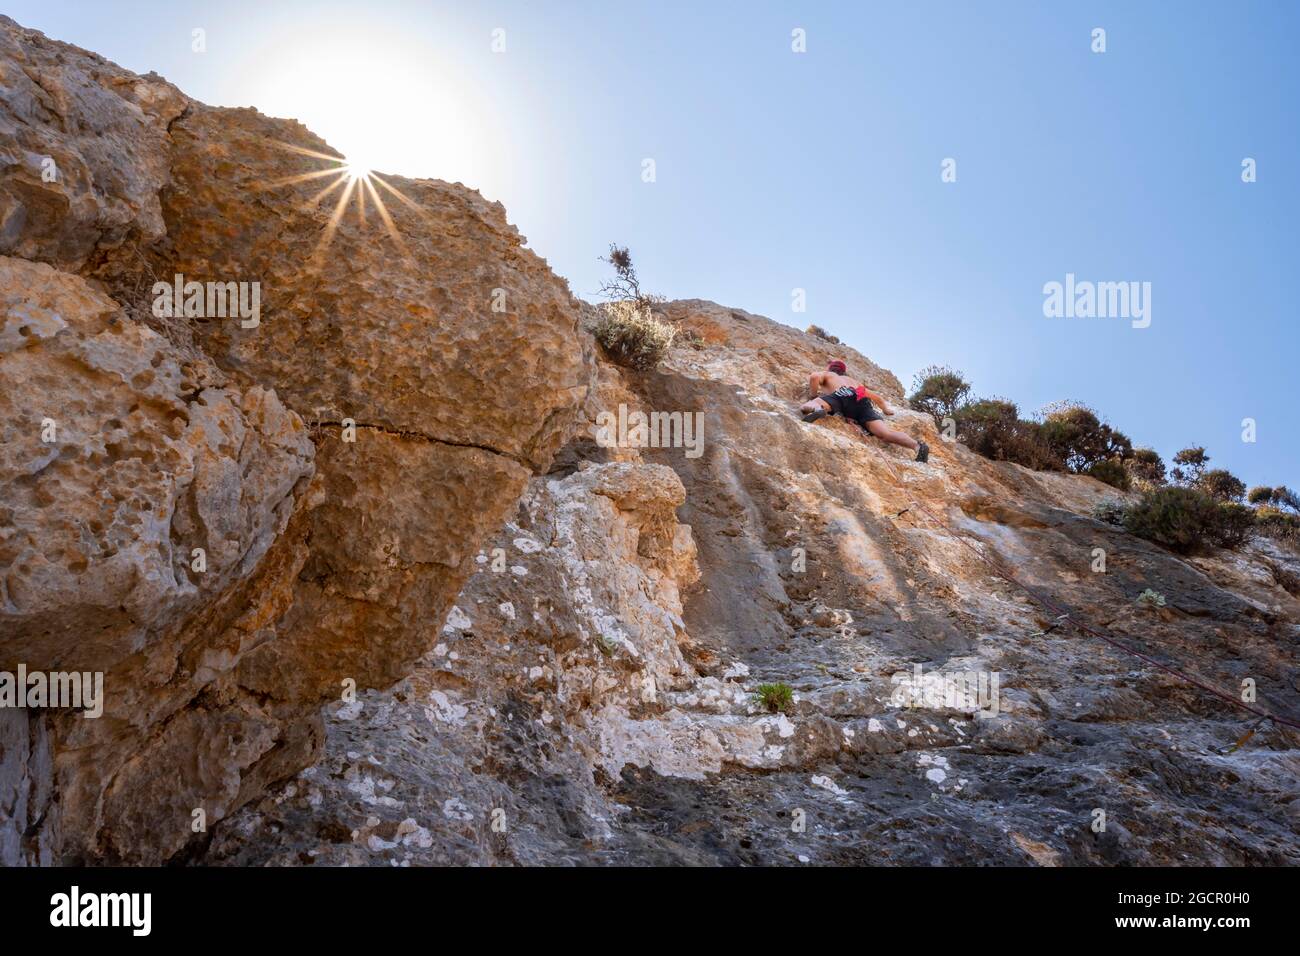 Escalada en roca, escalada en plomo, escalada deportiva, Kalymnos, Dodecaneso, Grecia Foto de stock